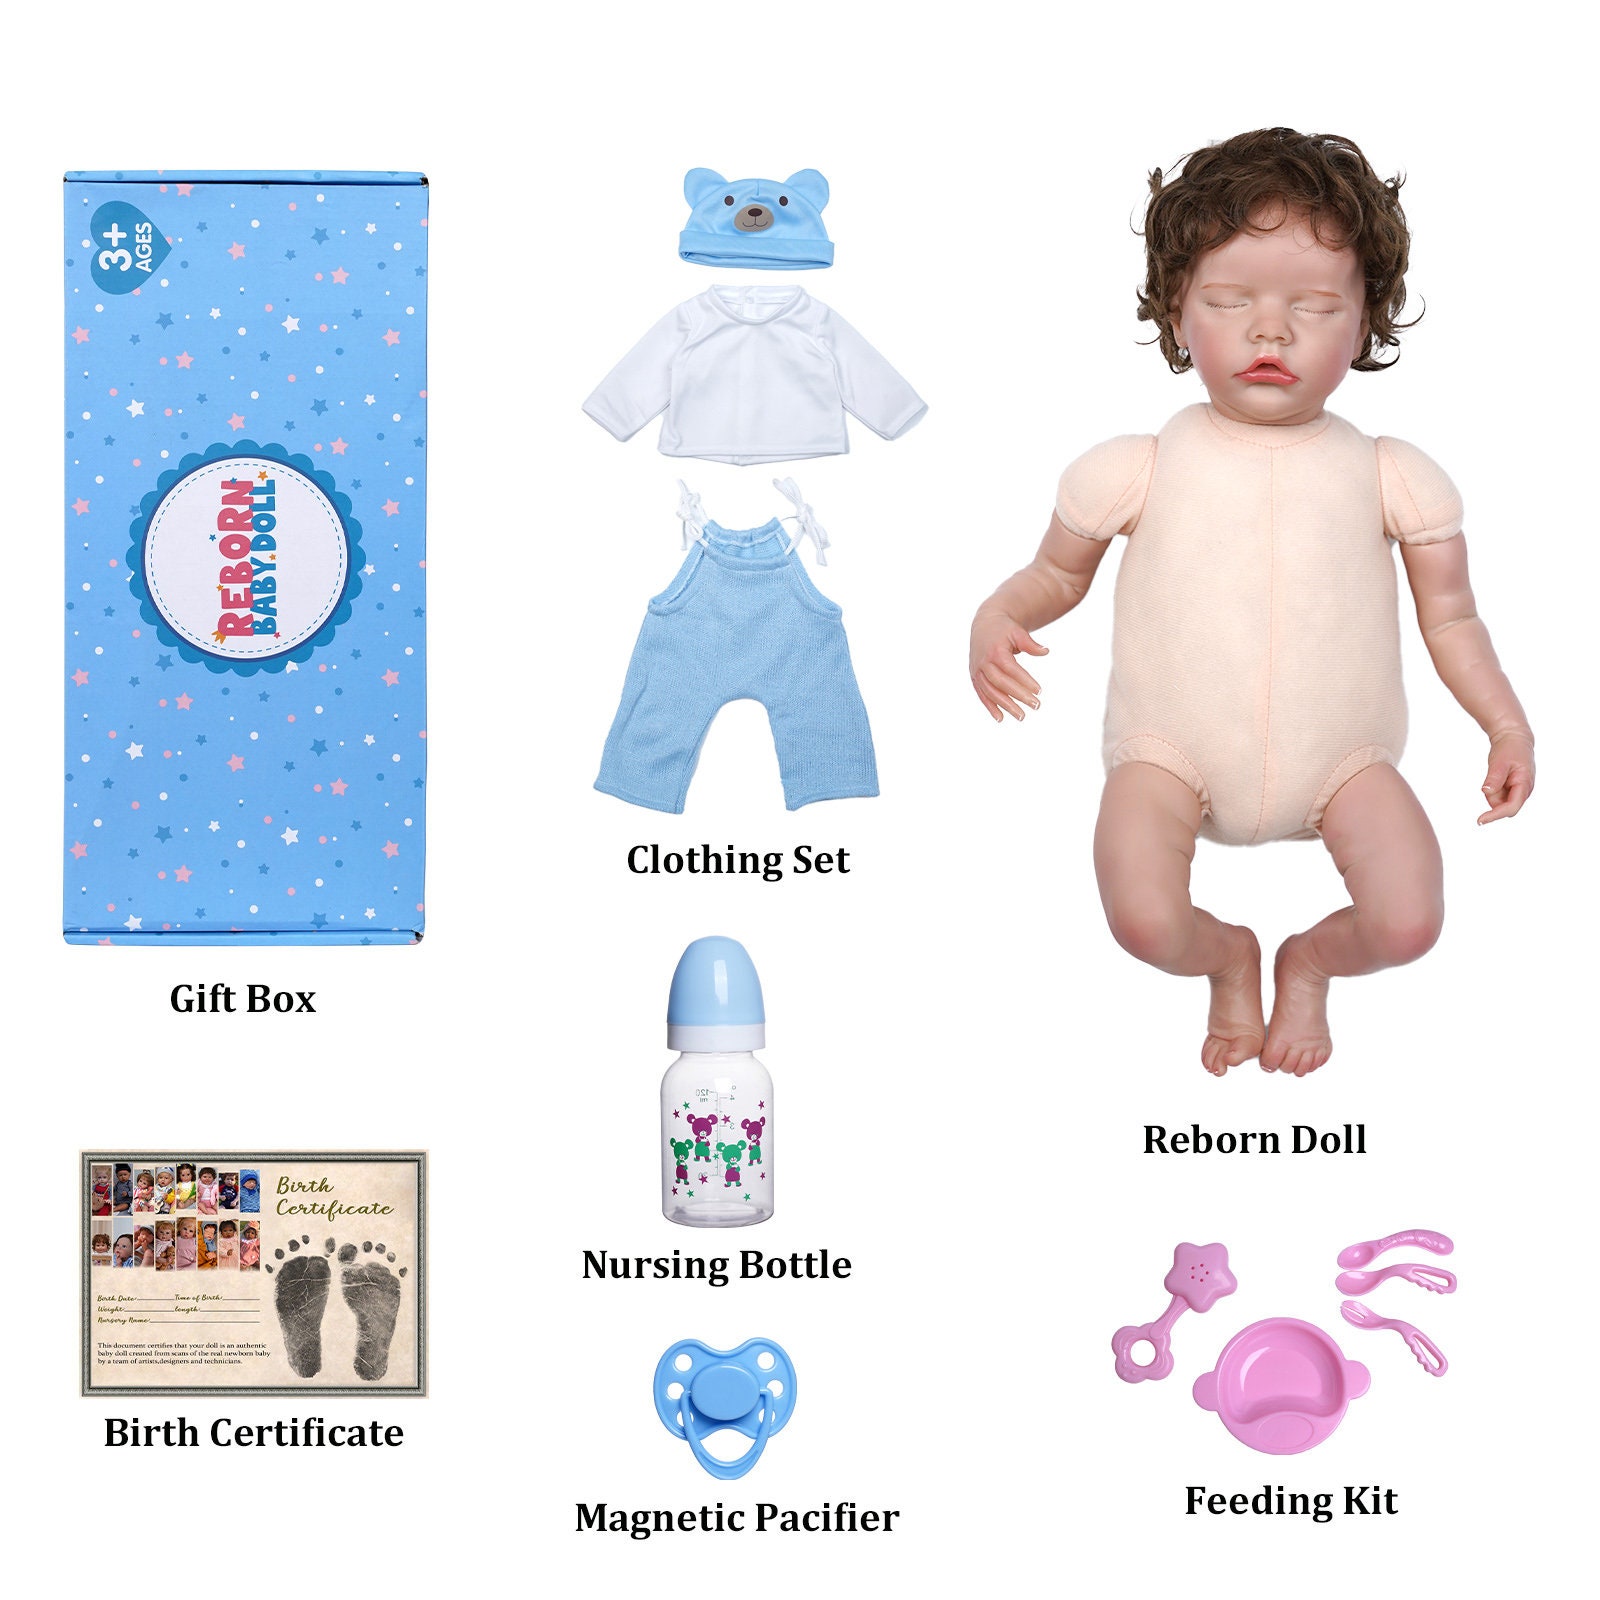 JOYMOR 22in Newborn Lifelike Silicone Vinyl Reborn Gift Baby Doll